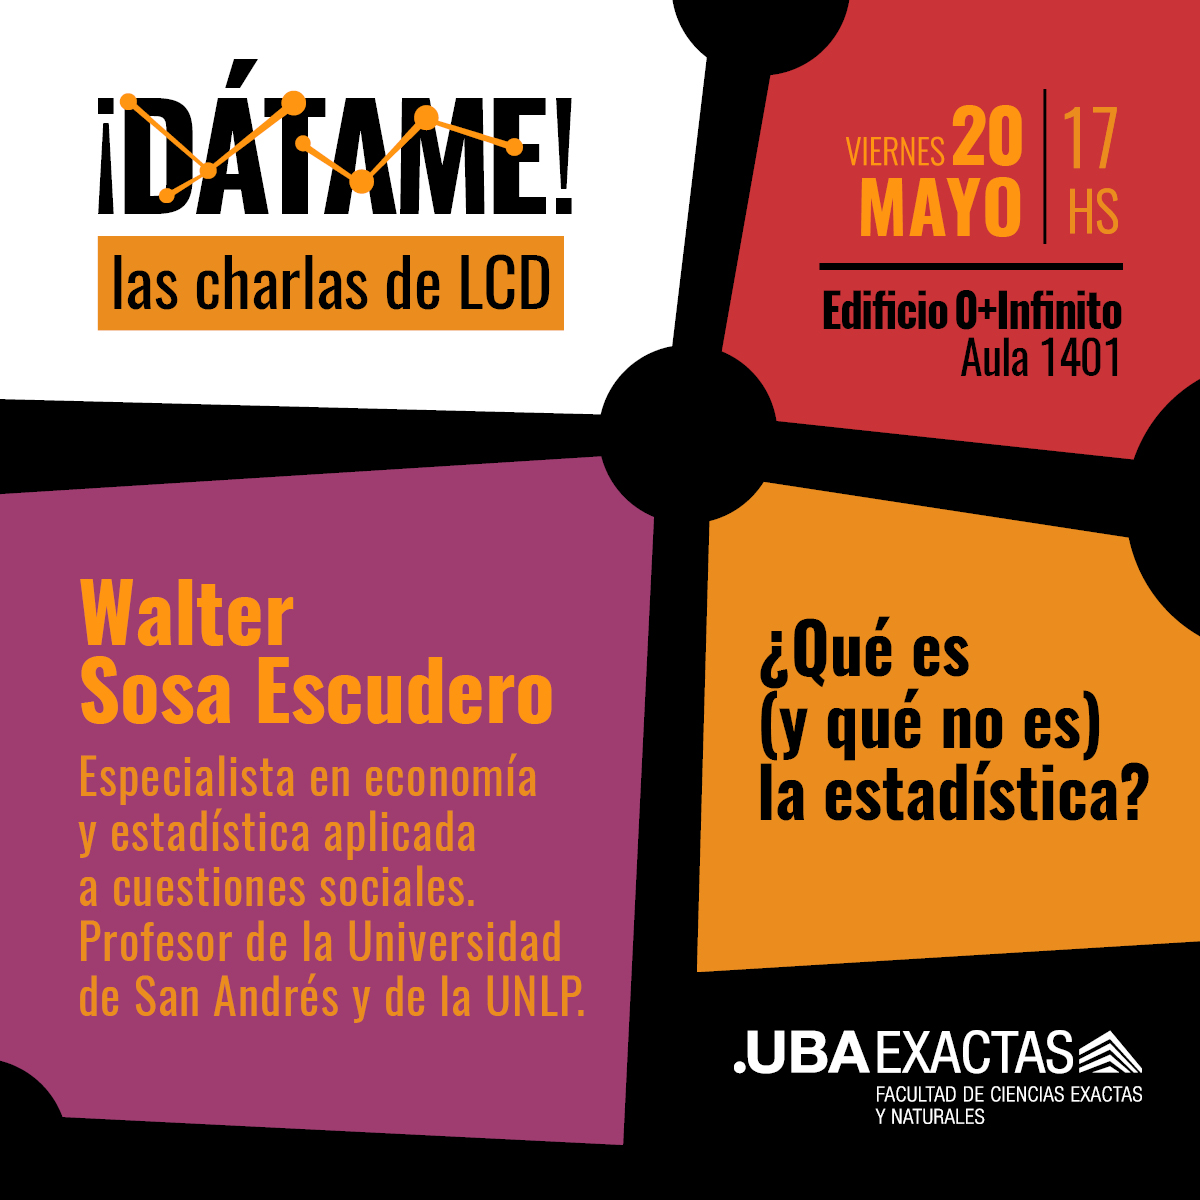 ¡Dátame! con Walter Sosa Escudero | Viernes 20-05